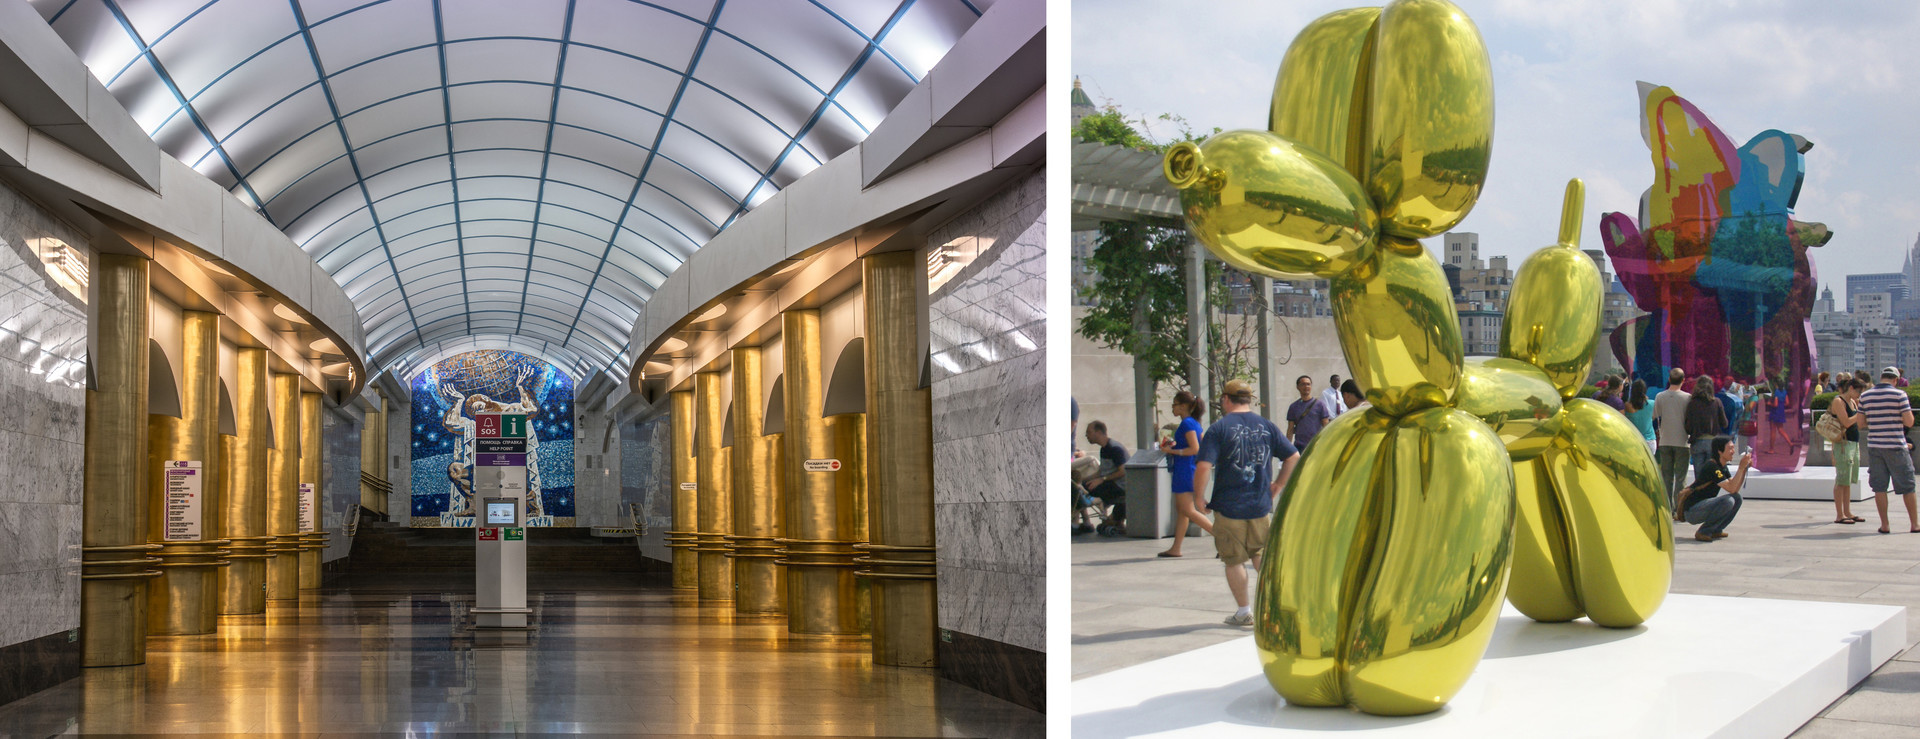 As colunas douradas da estação Mejdunarôdnaia lembram os moradores dos cães de balão do artista norte-americano Jeff Koons.